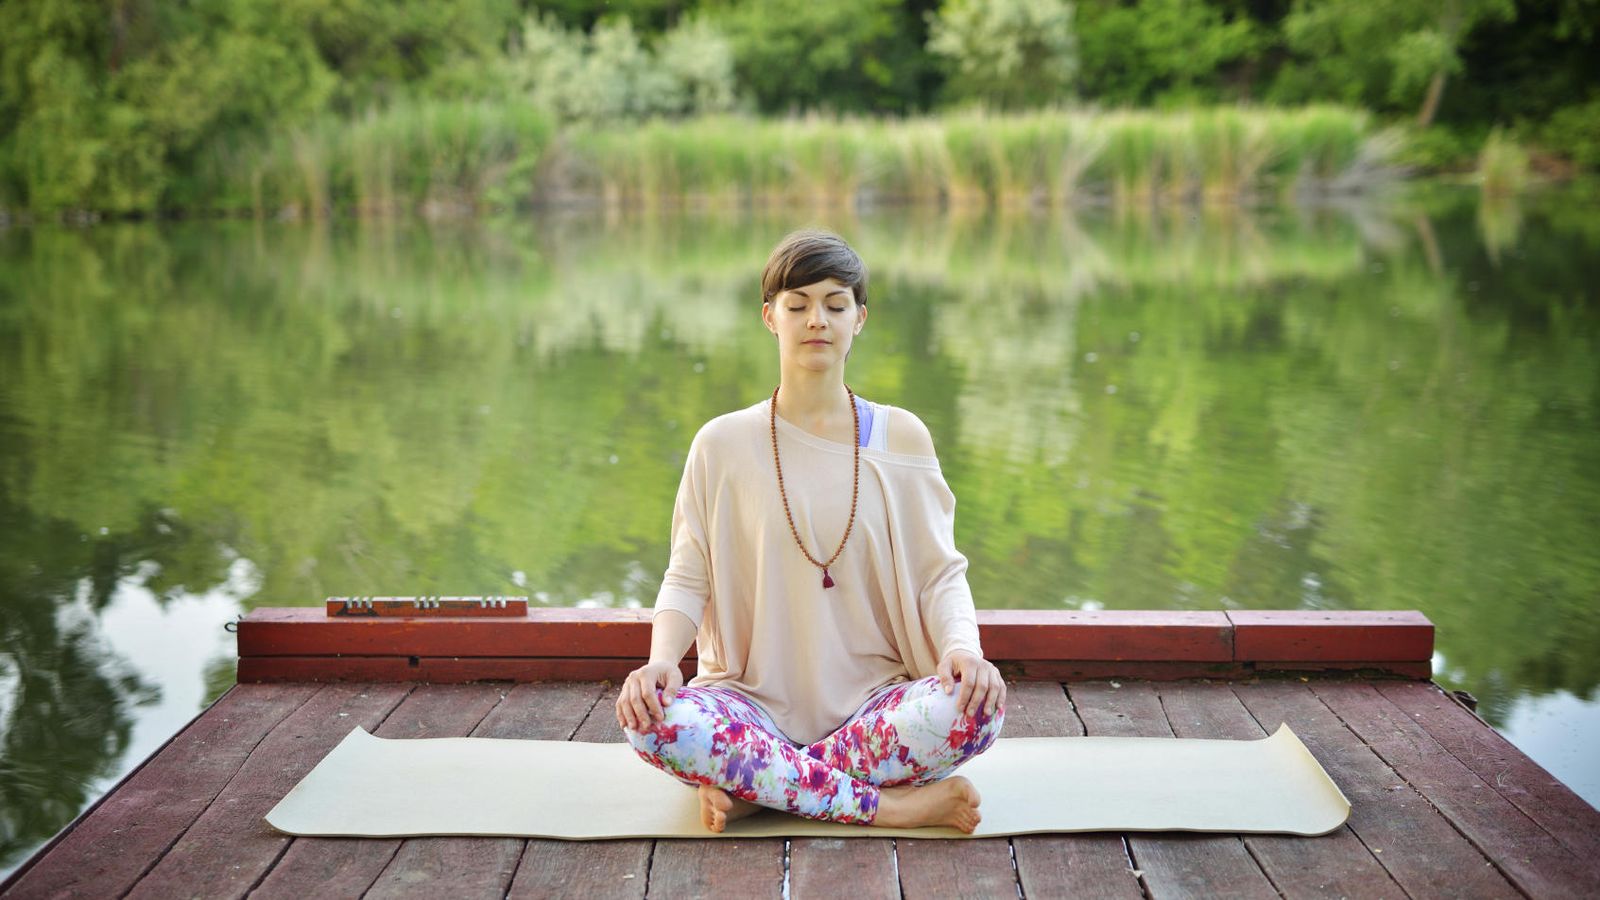 Foto: Mindfulness es darse cuenta de la experiencia presente. (iStock)